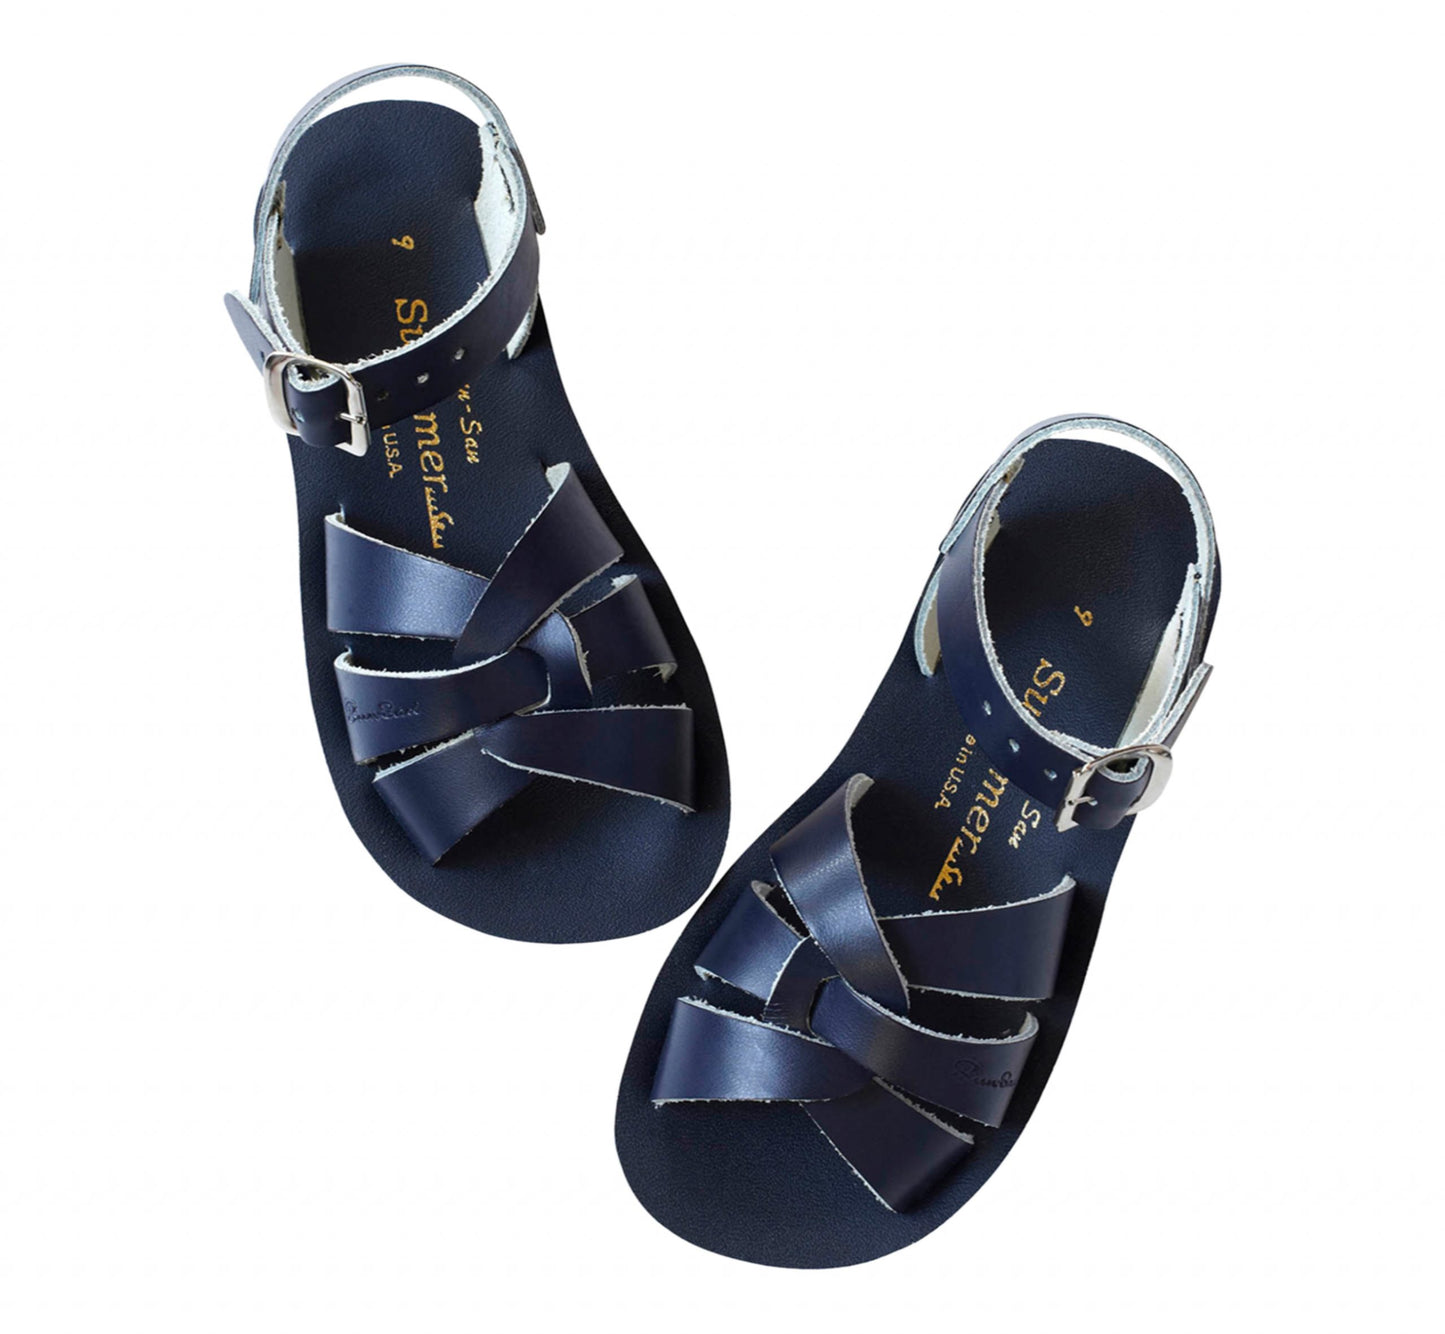 "Swimmer" Sandals - Navy